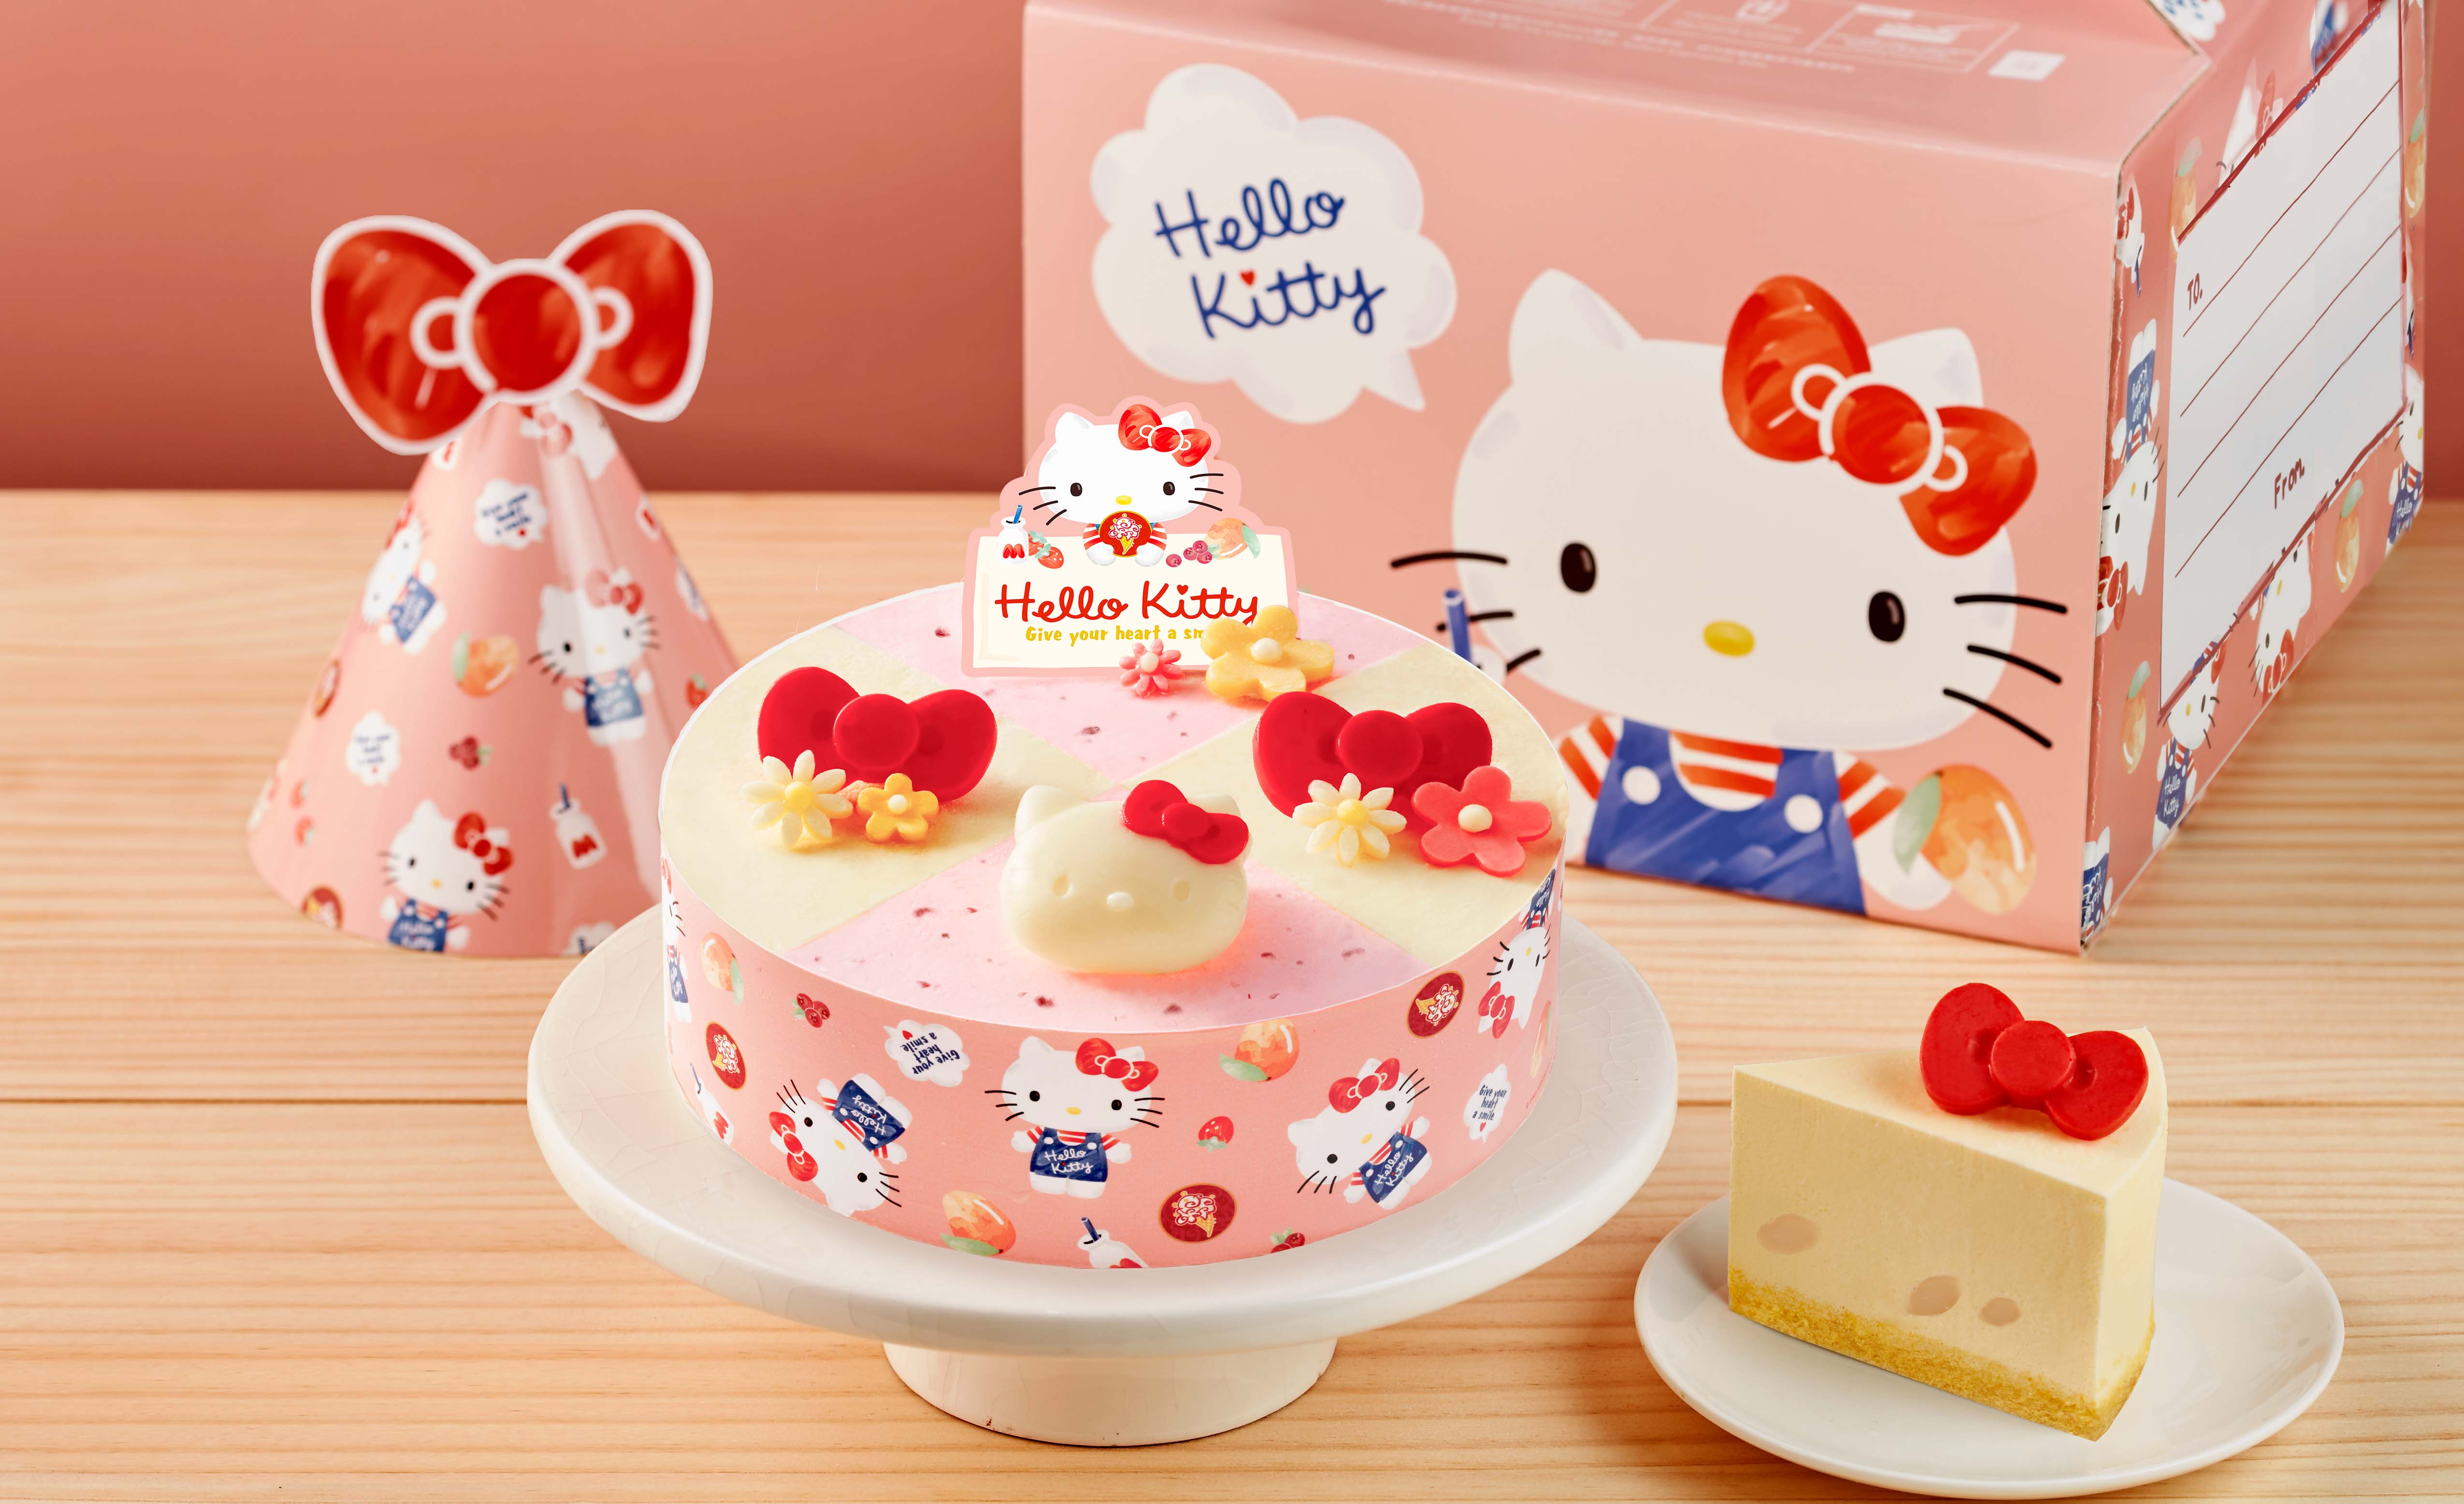 貓迷快衝！「HELLO KITTY蛋糕」8/23開賣 還可加購3色造型湯碗、餐具組|食尚玩家